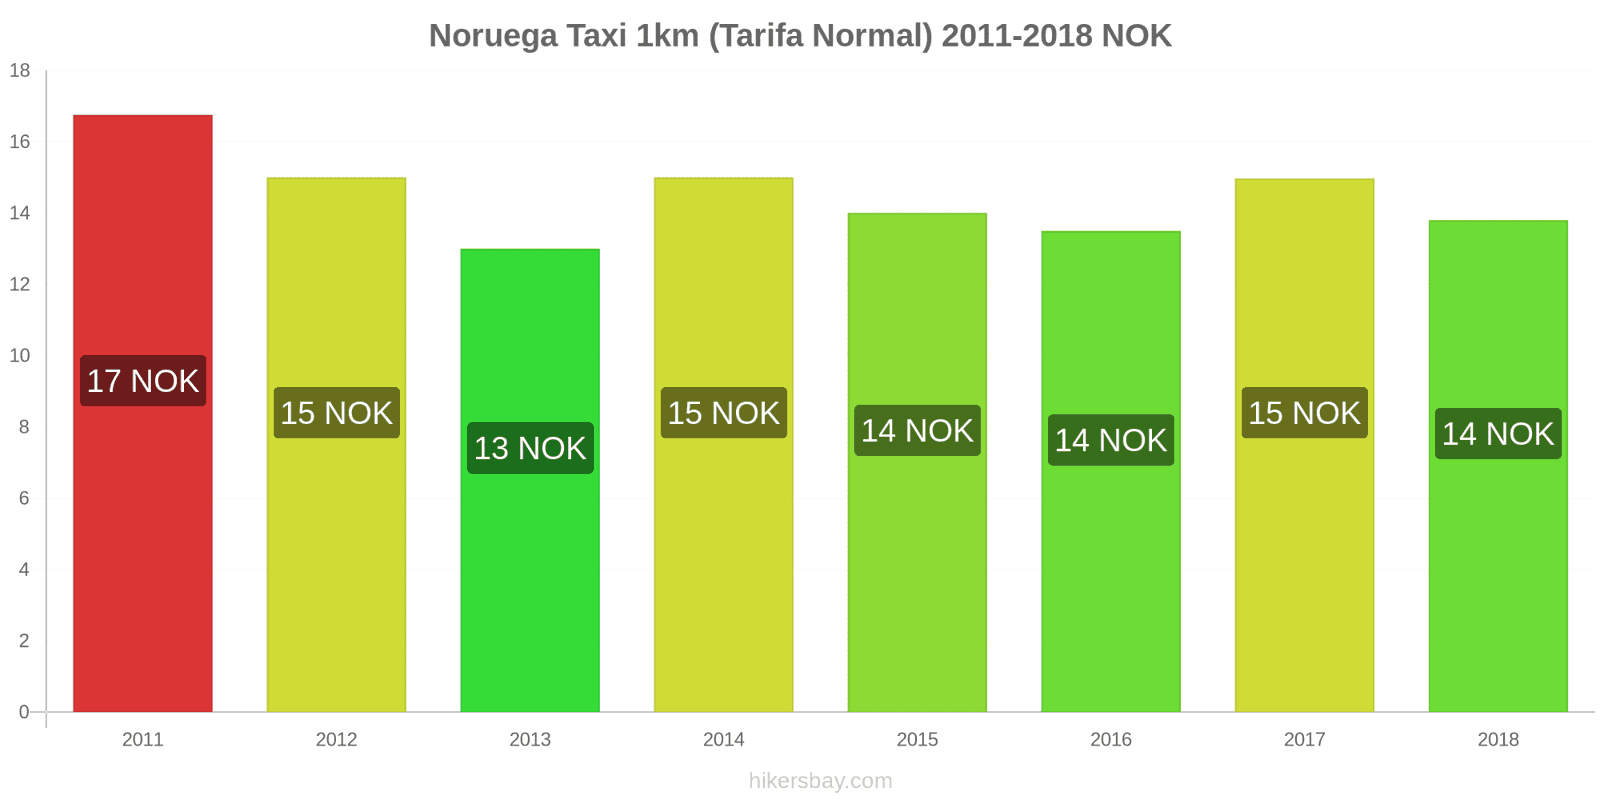 Noruega cambios de precios Taxi 1km (tarifa normal) hikersbay.com